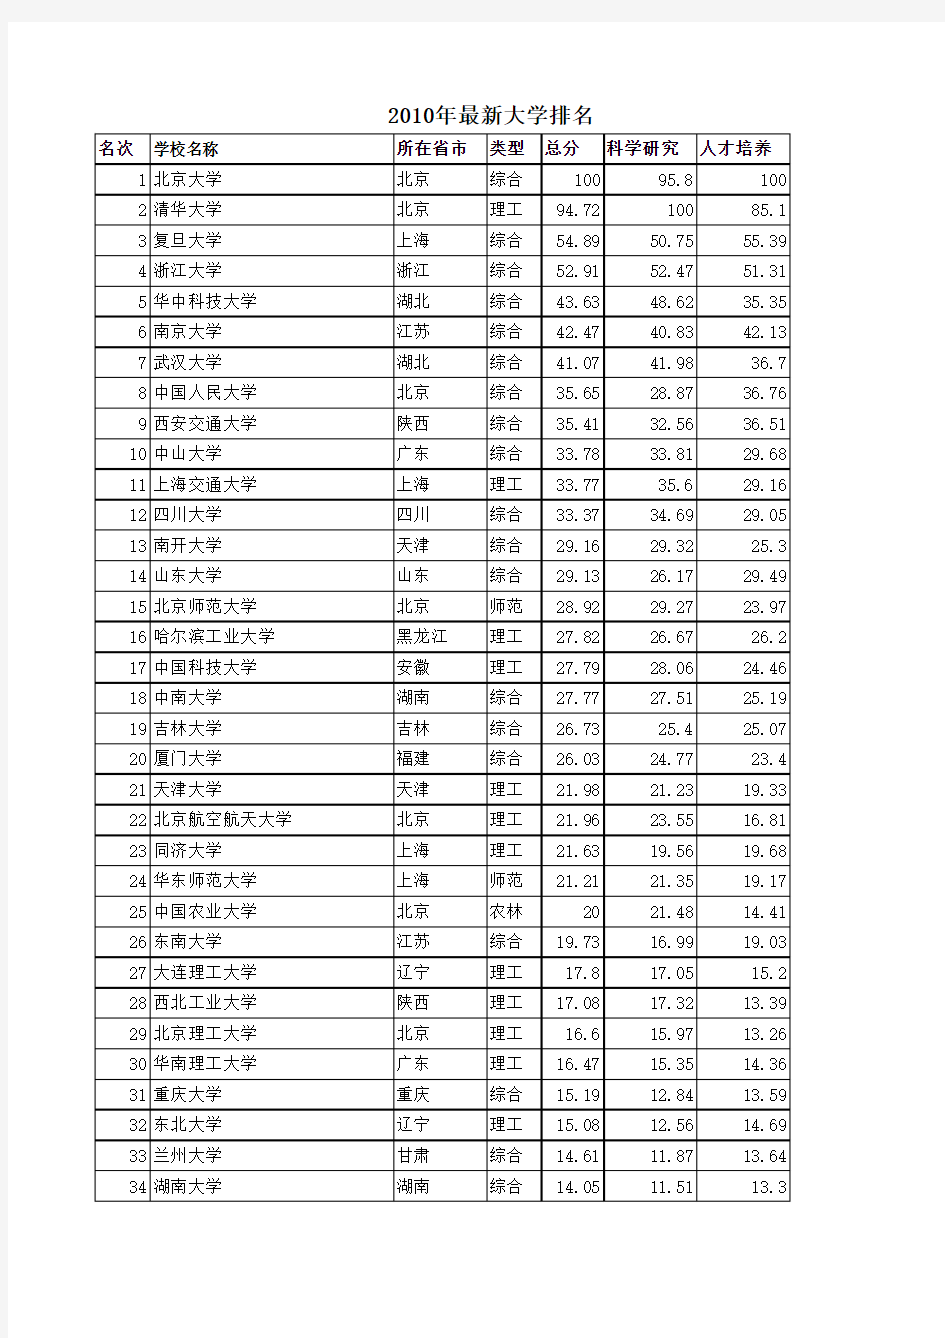 2011年最新中国大学排名